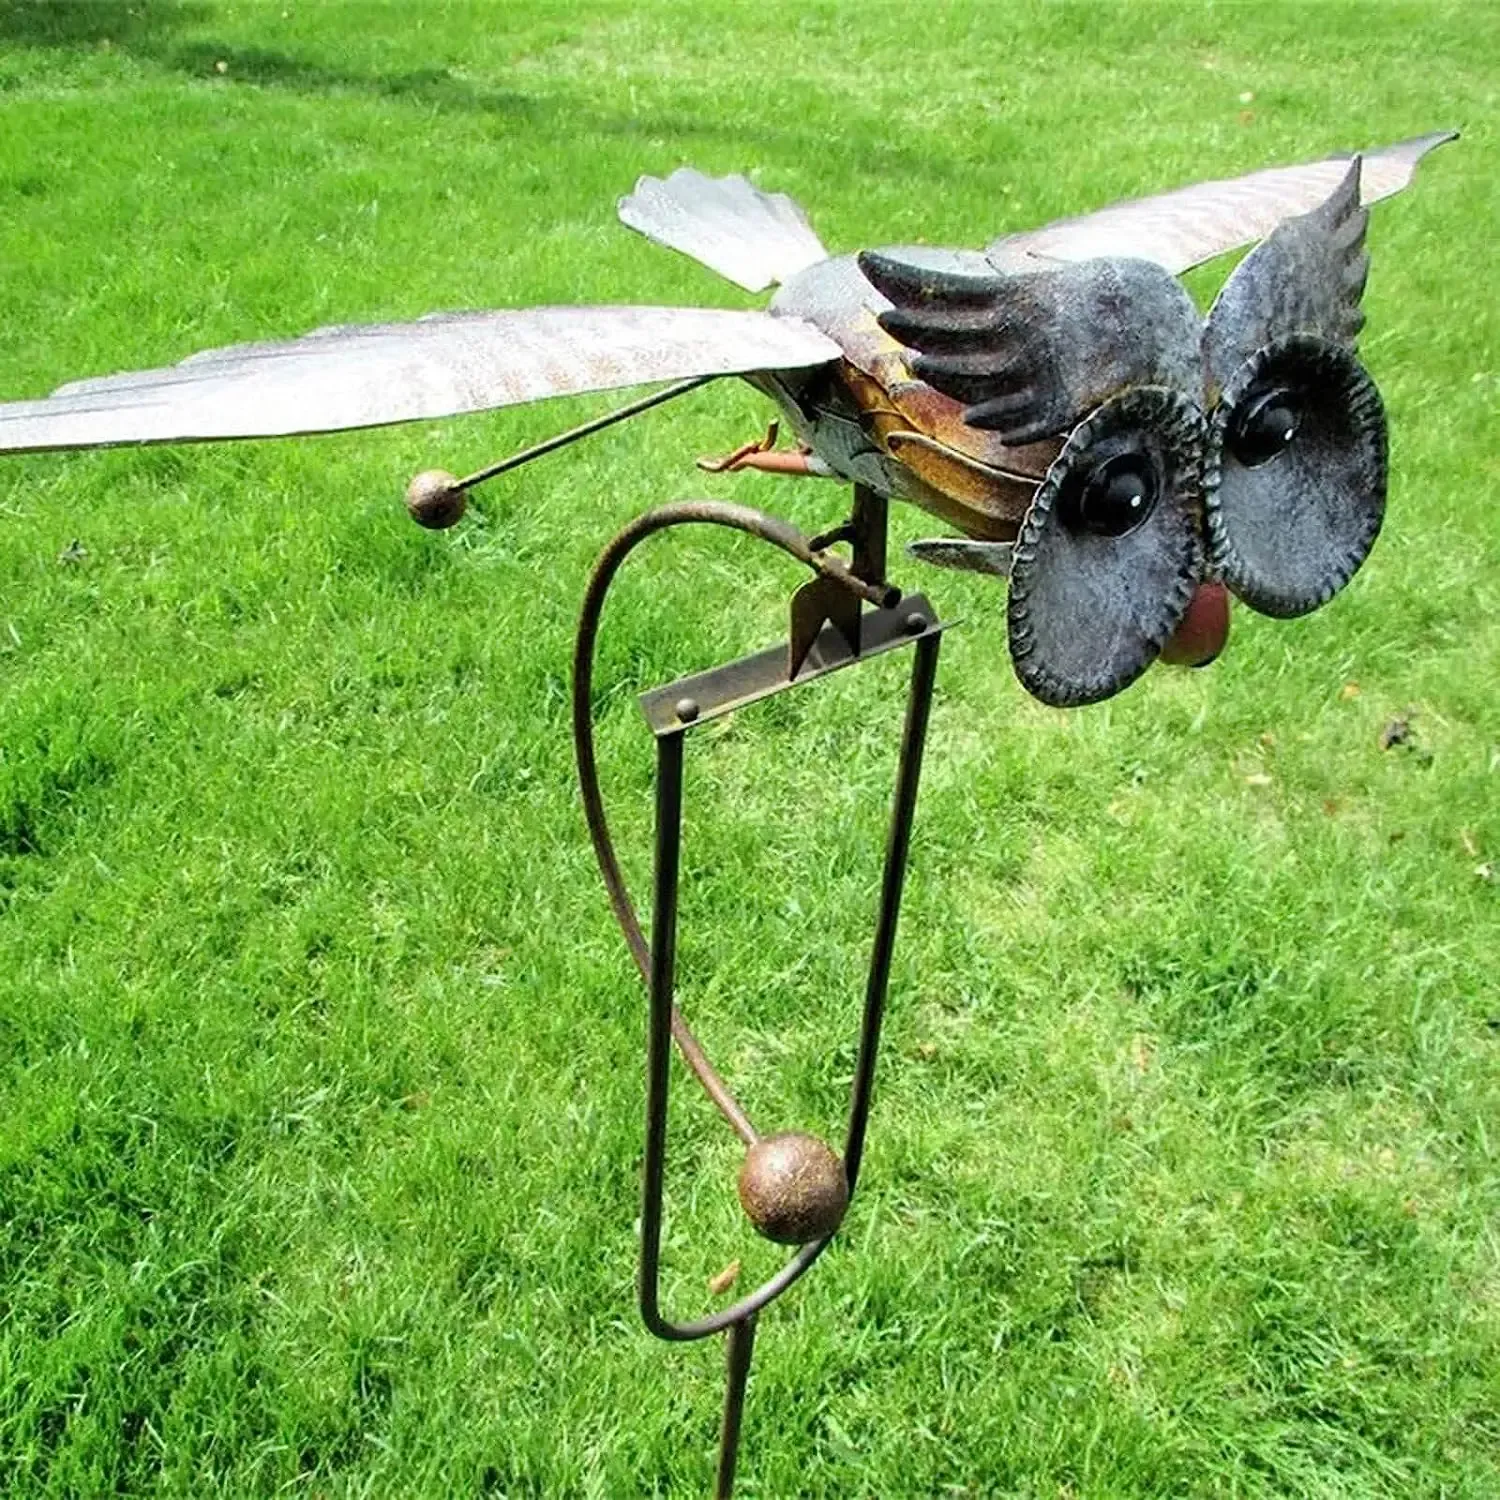 Dekoracje dekoracja ogrodu żelazne skrzydło żelazne skrzydło sowa wiatr spinner realistyczny odporny na odporność na ogród ogrodowy stawka sztuka na zewnątrz posąg sztuki